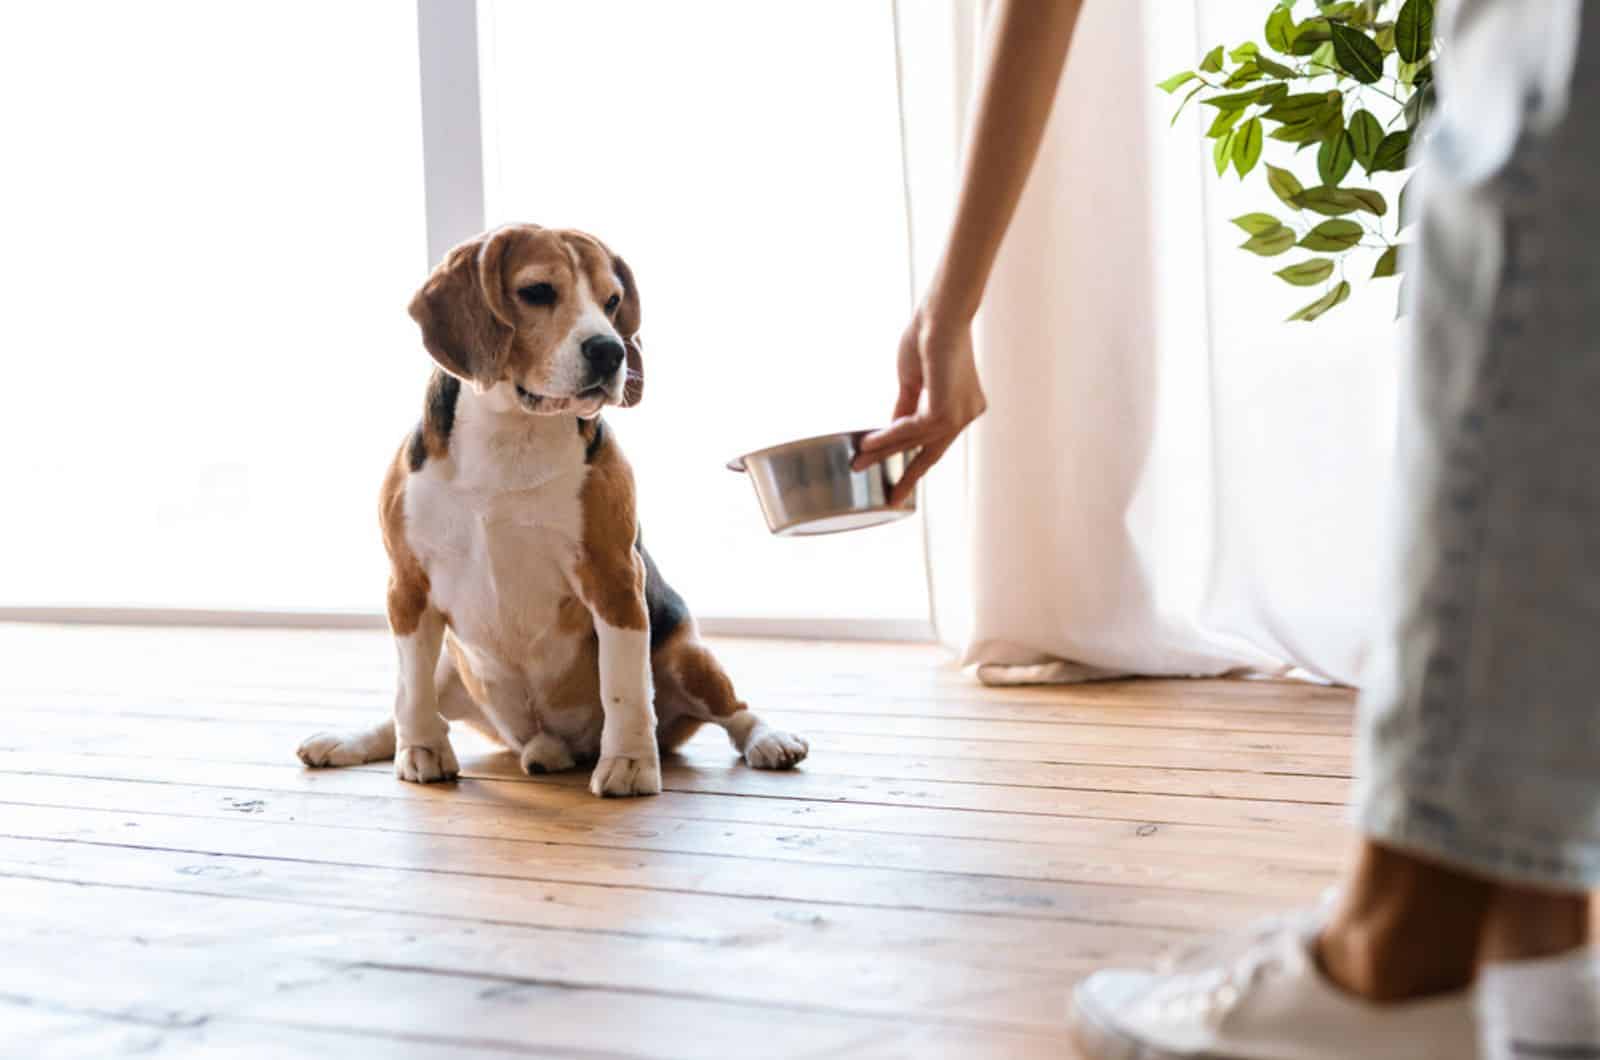 beagle dog looking at bowl with food